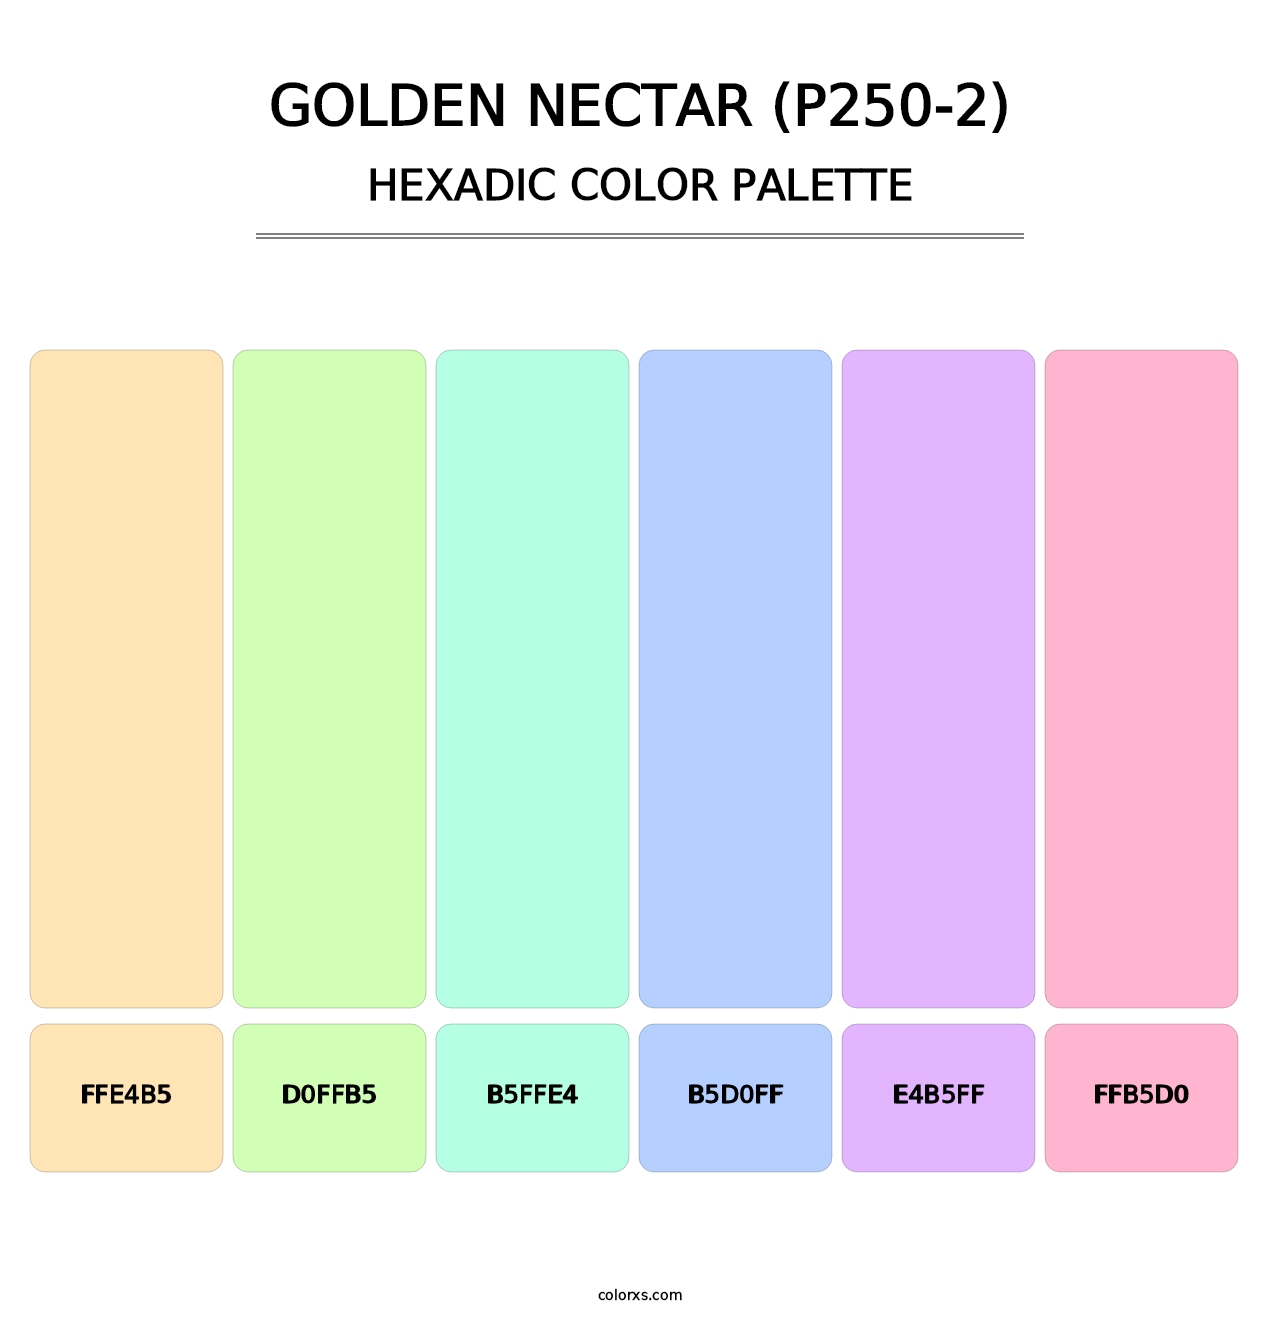 Golden Nectar (P250-2) - Hexadic Color Palette